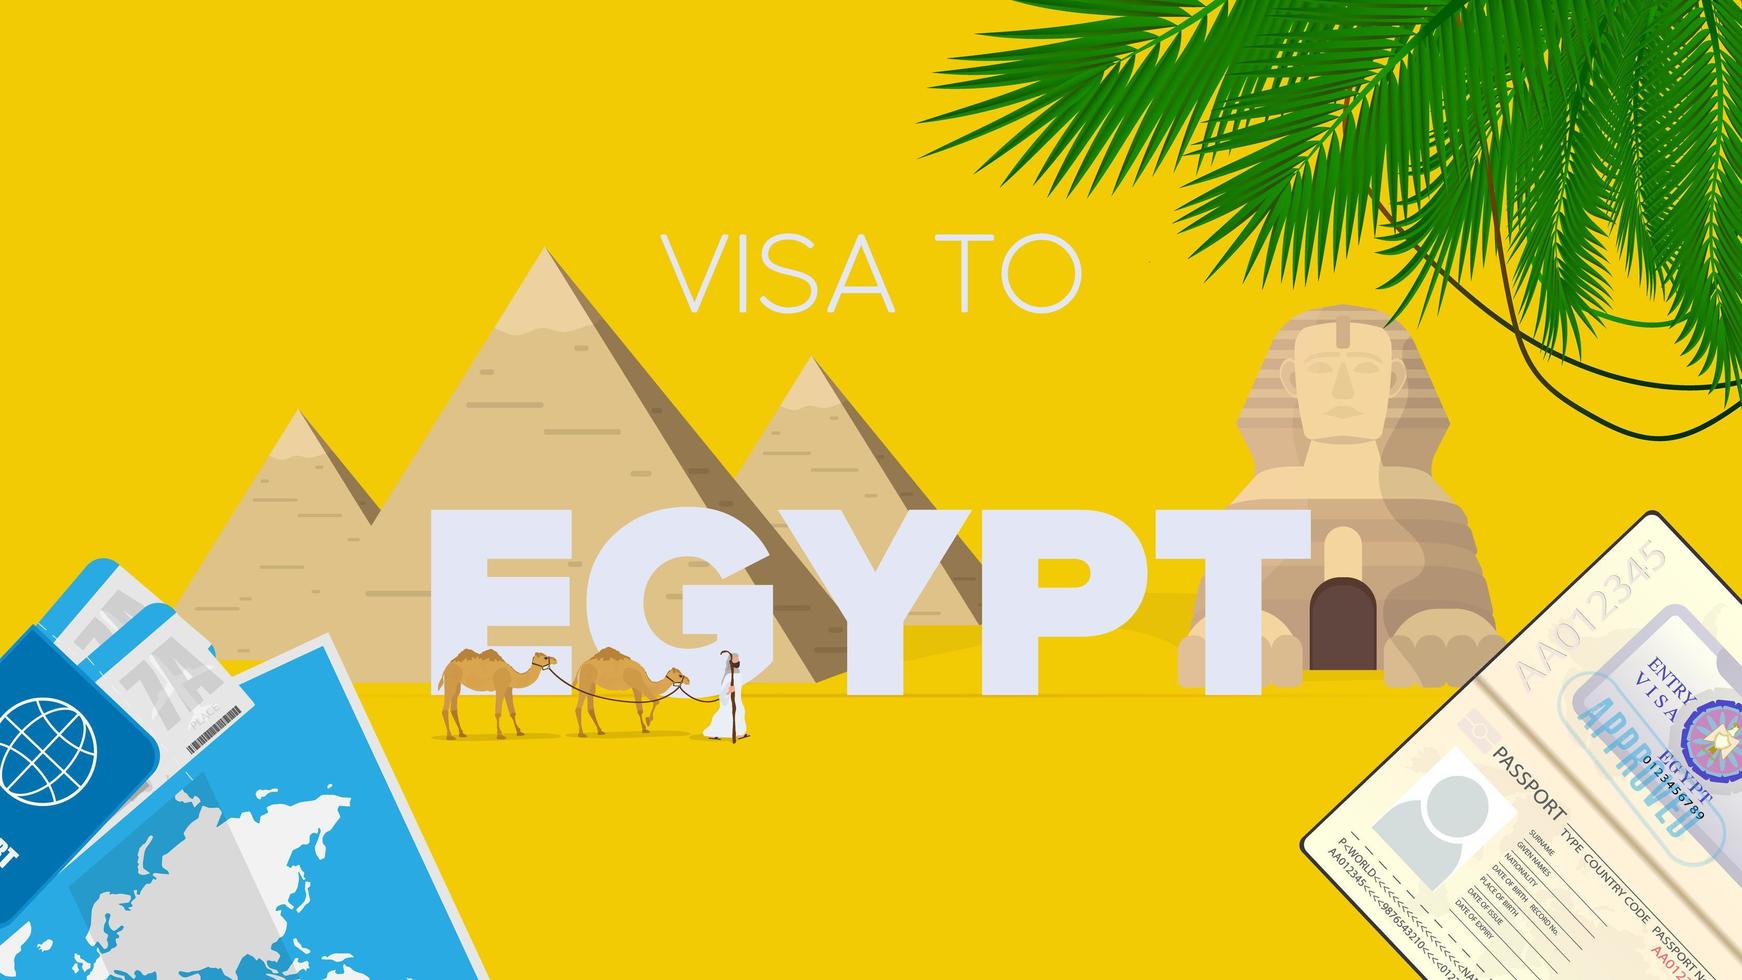 bandera amarilla de la visa de egipto. pasaporte, boletos de avión, mapa del mundo, visa de egipto, caravana de camellos, pirámides egipcias y esfinge. cartel de vectores